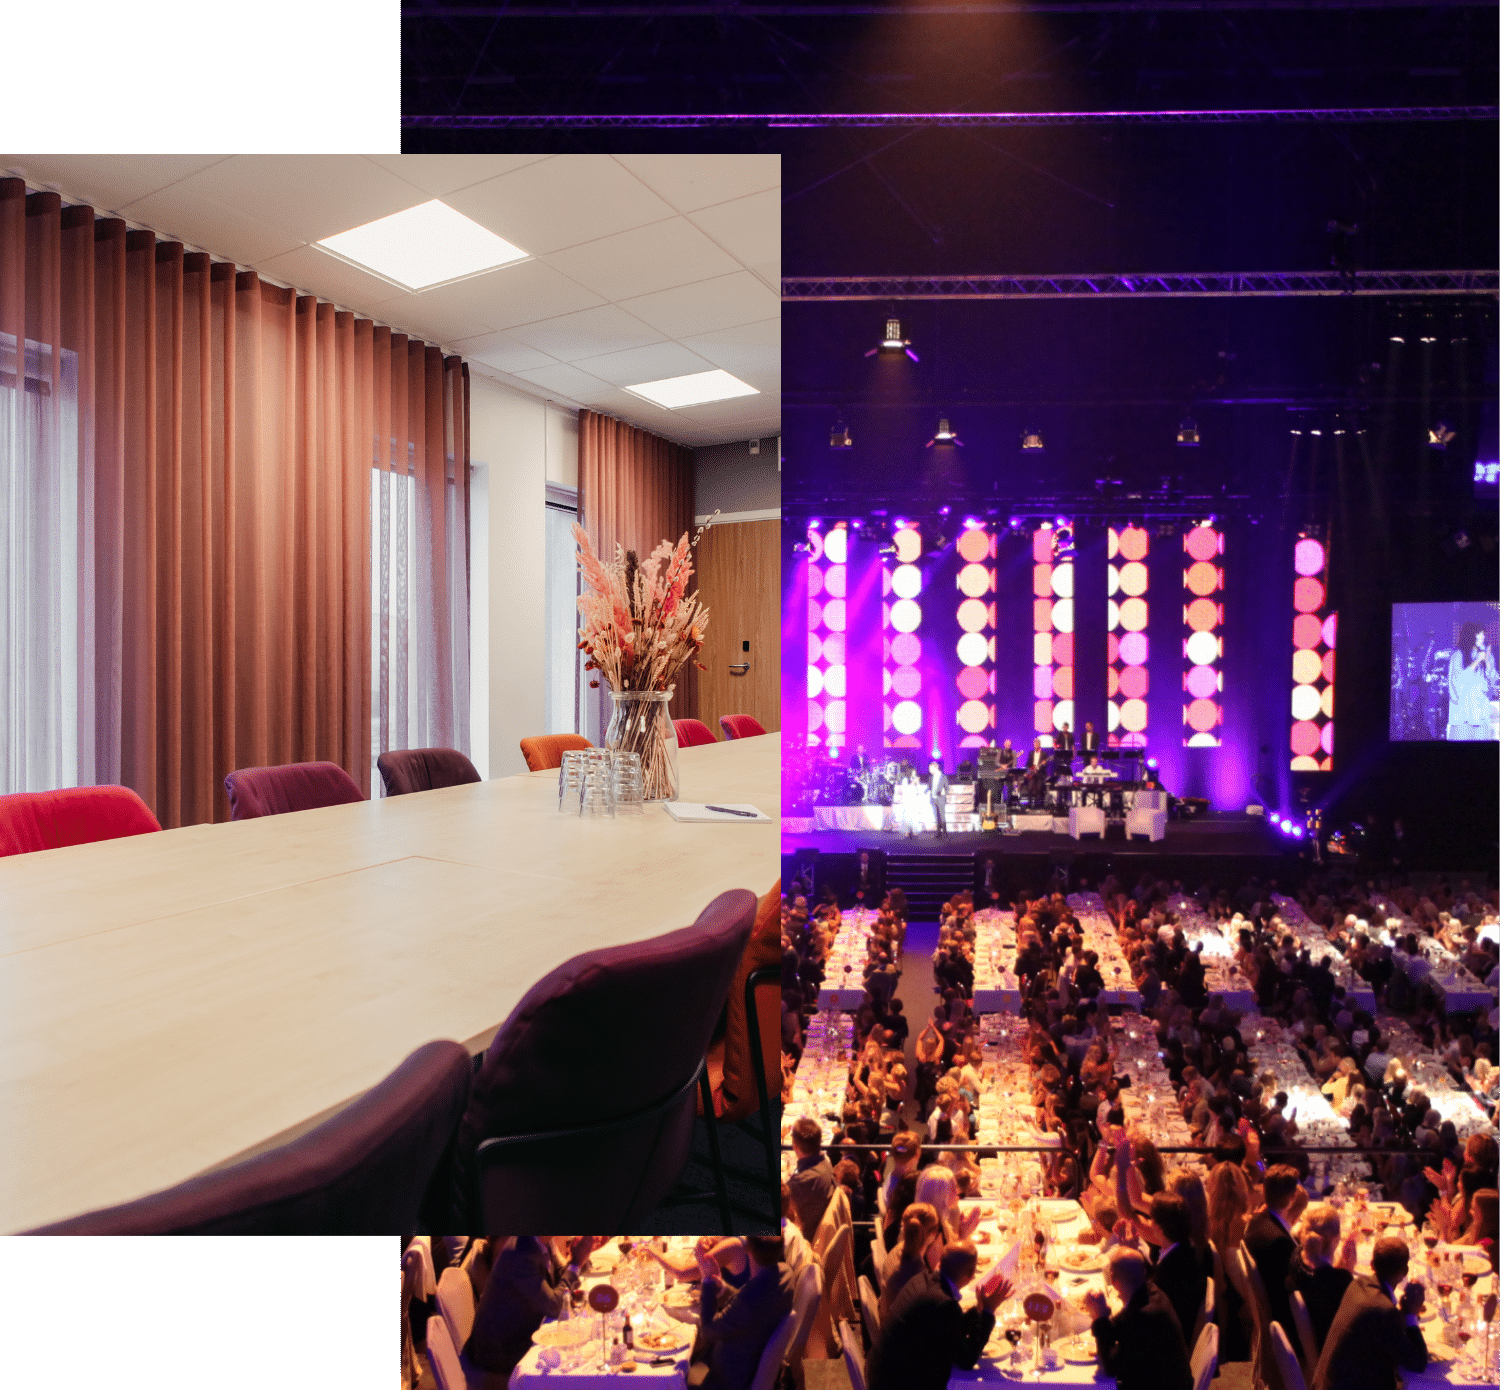 Zwei verschiedene Konferenzräume. Ein kleineres mit einem Holztisch und lila Stühlen. Ein größerer Raum mit gedeckten langen Tischen und einer Bühne mit Beleuchtung.